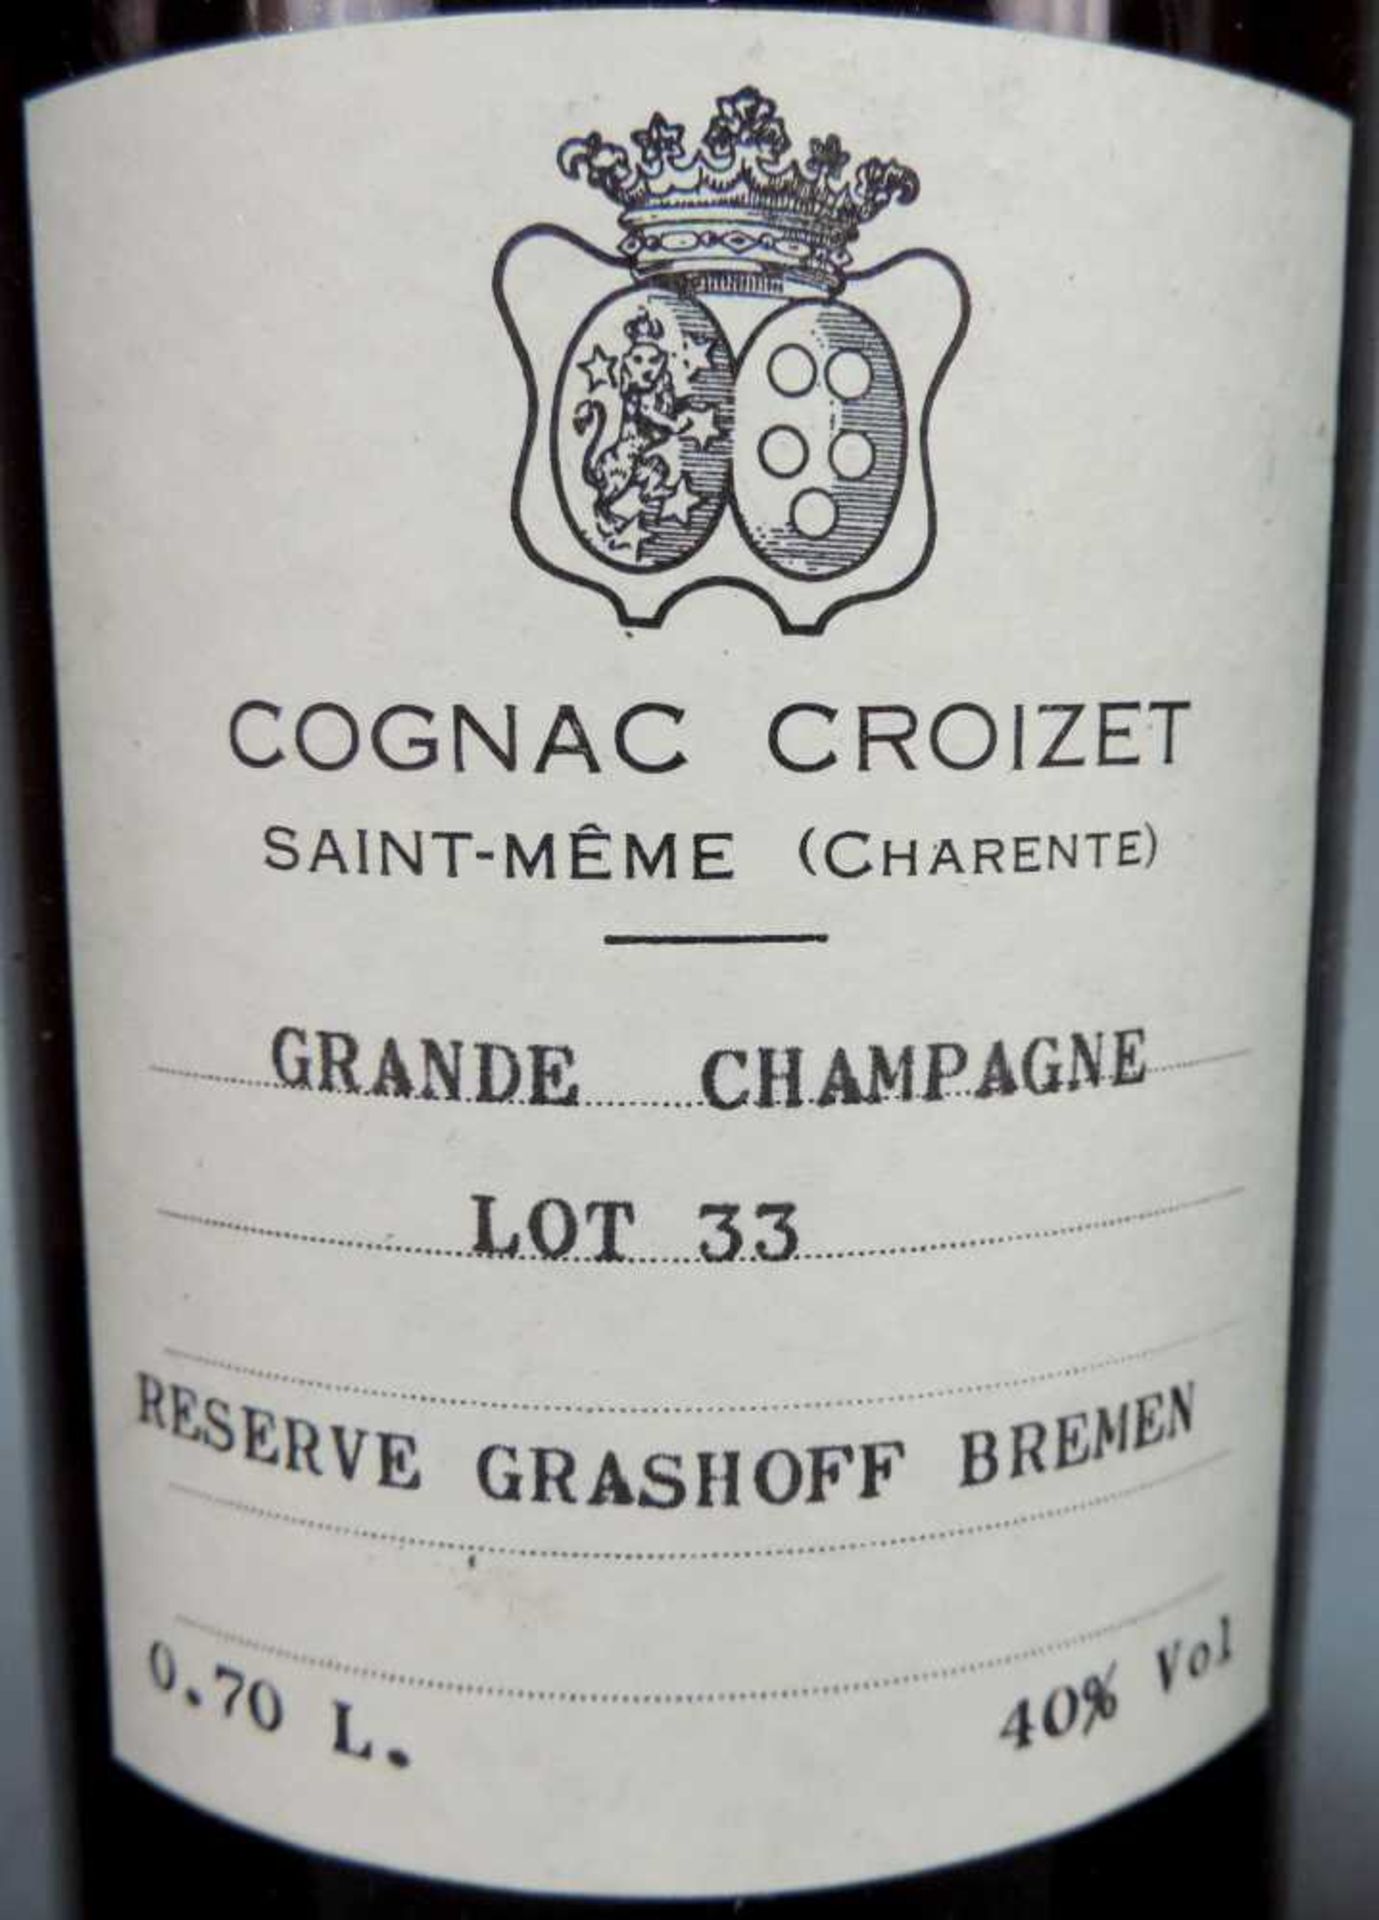 3 Flaschen Cognac Croizet Saint Même (Charente) Grand Champagne. Lot 33. 40% 70cl. 3 bottles - Image 2 of 6